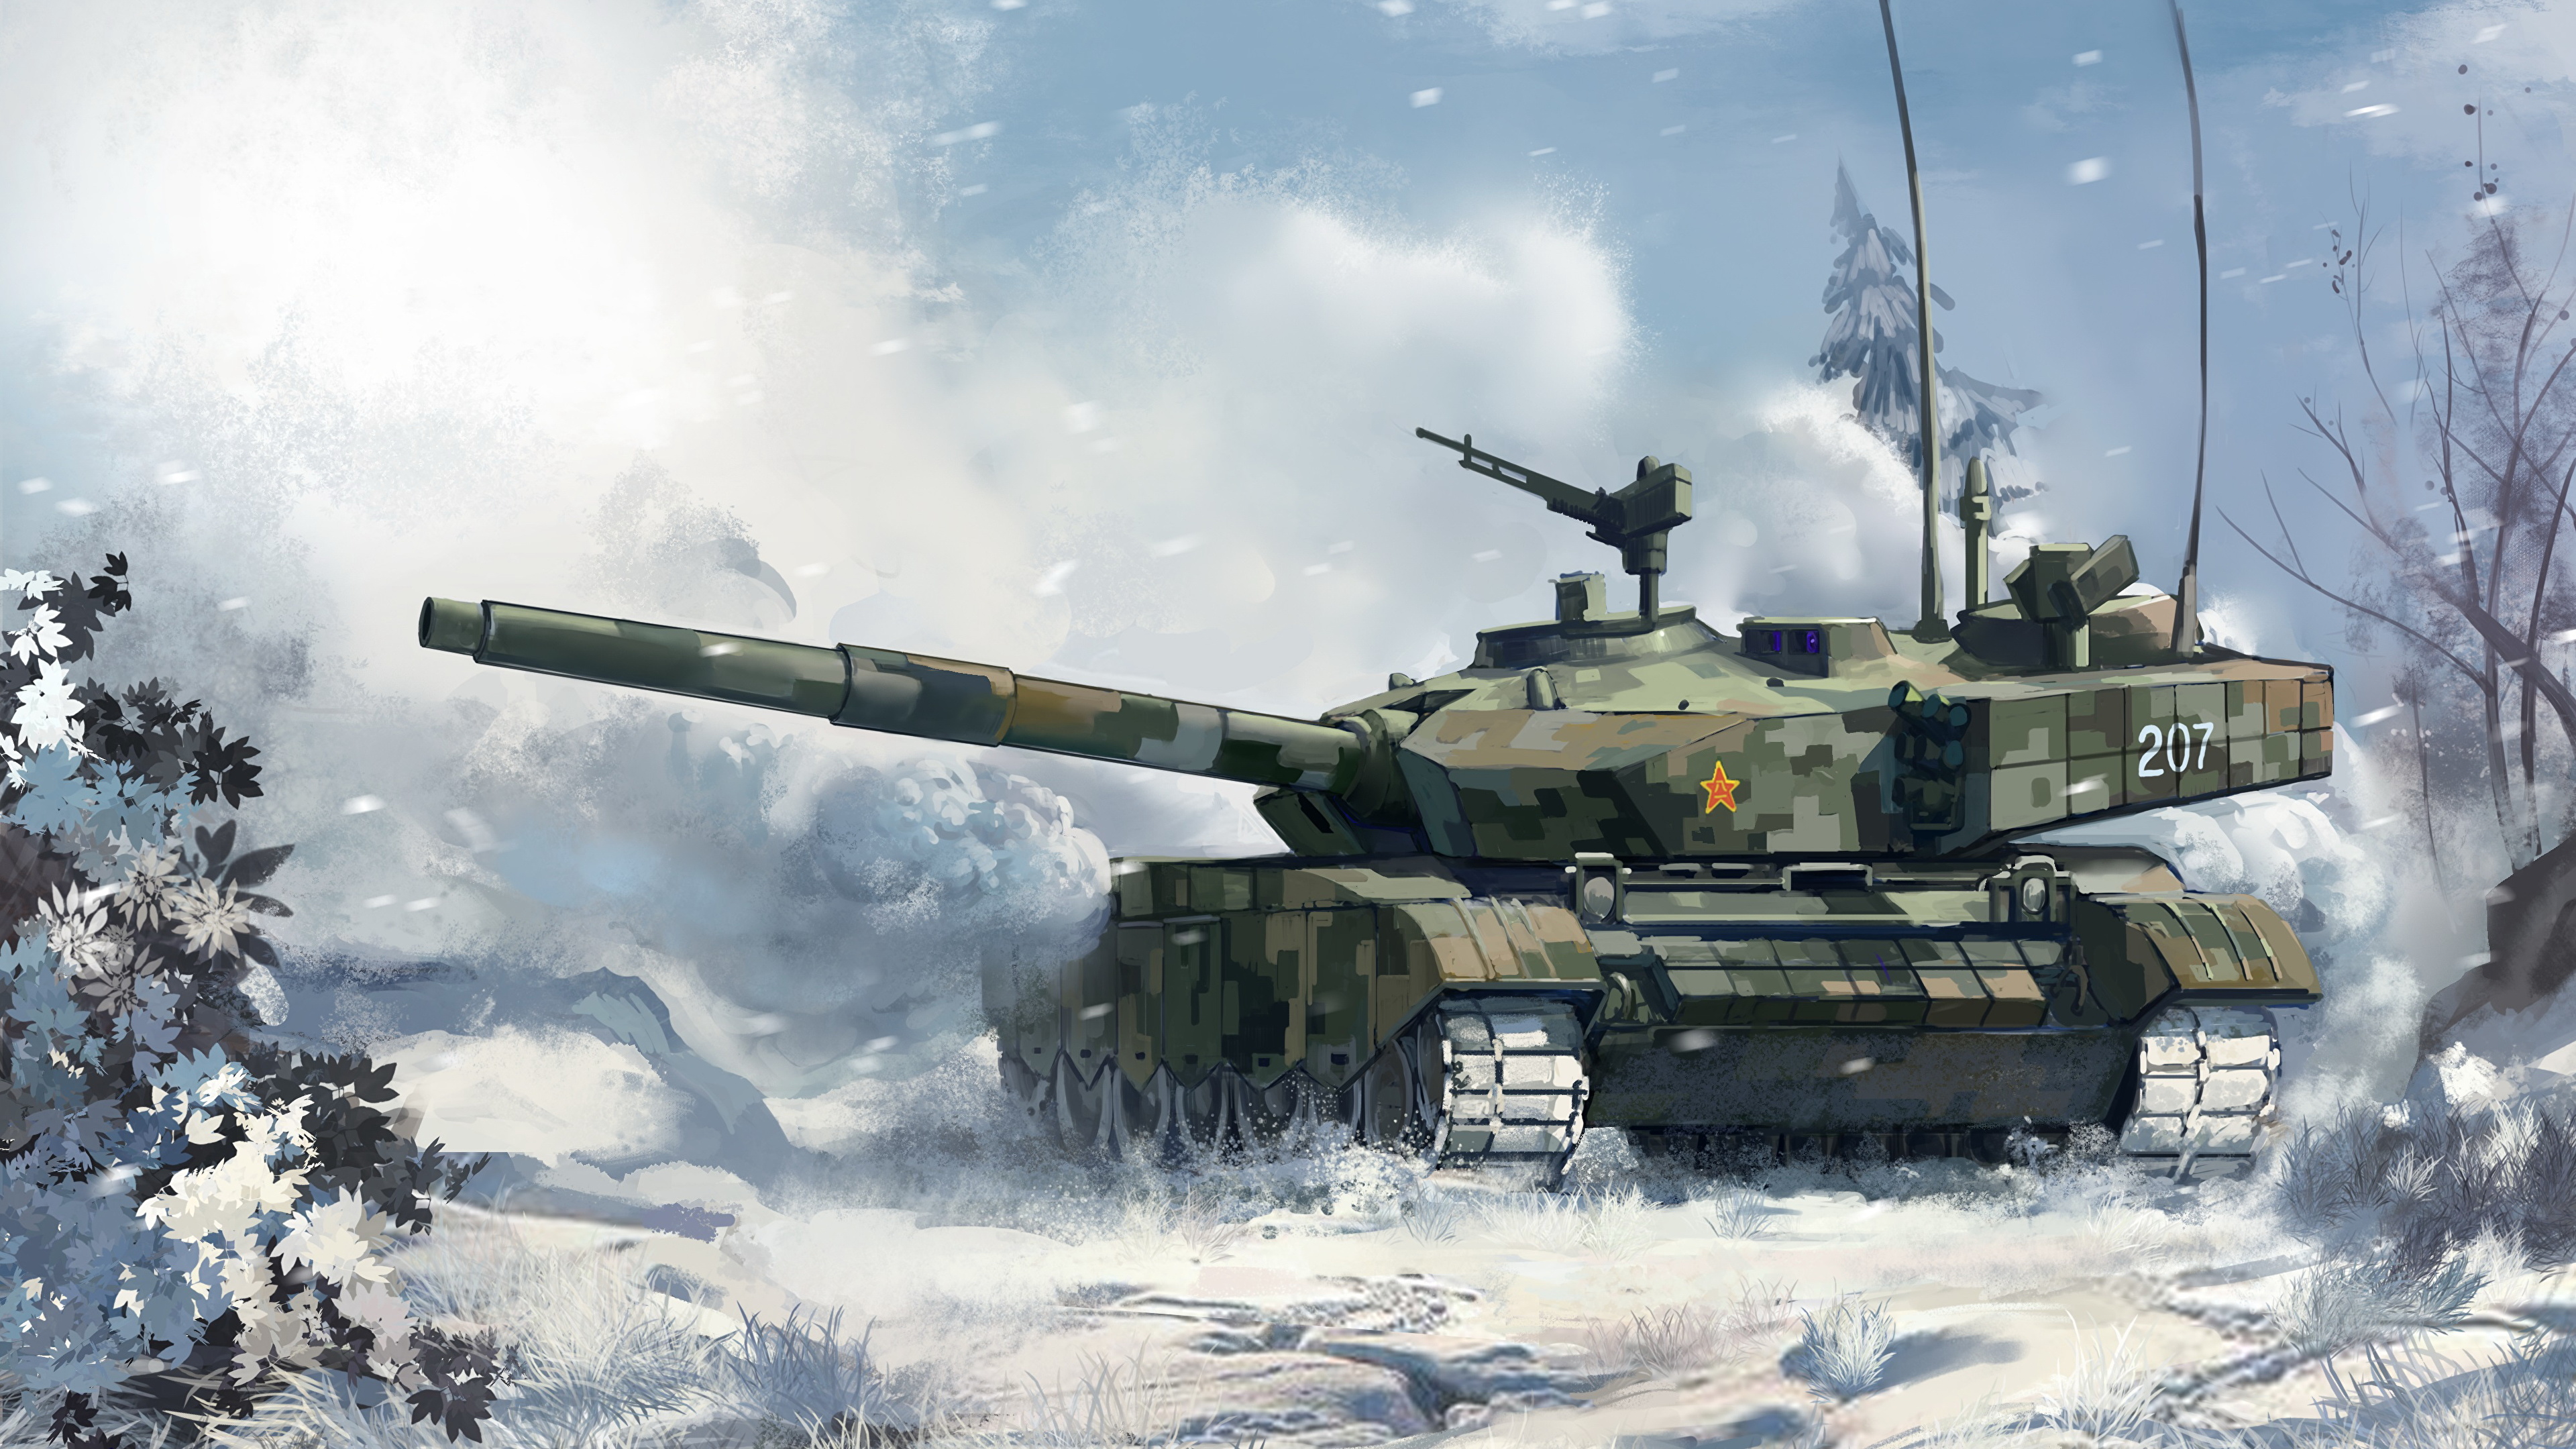 壁紙 3840x2160 戦車 描かれた壁紙 Type 99 雪 陸軍 ダウンロード 写真